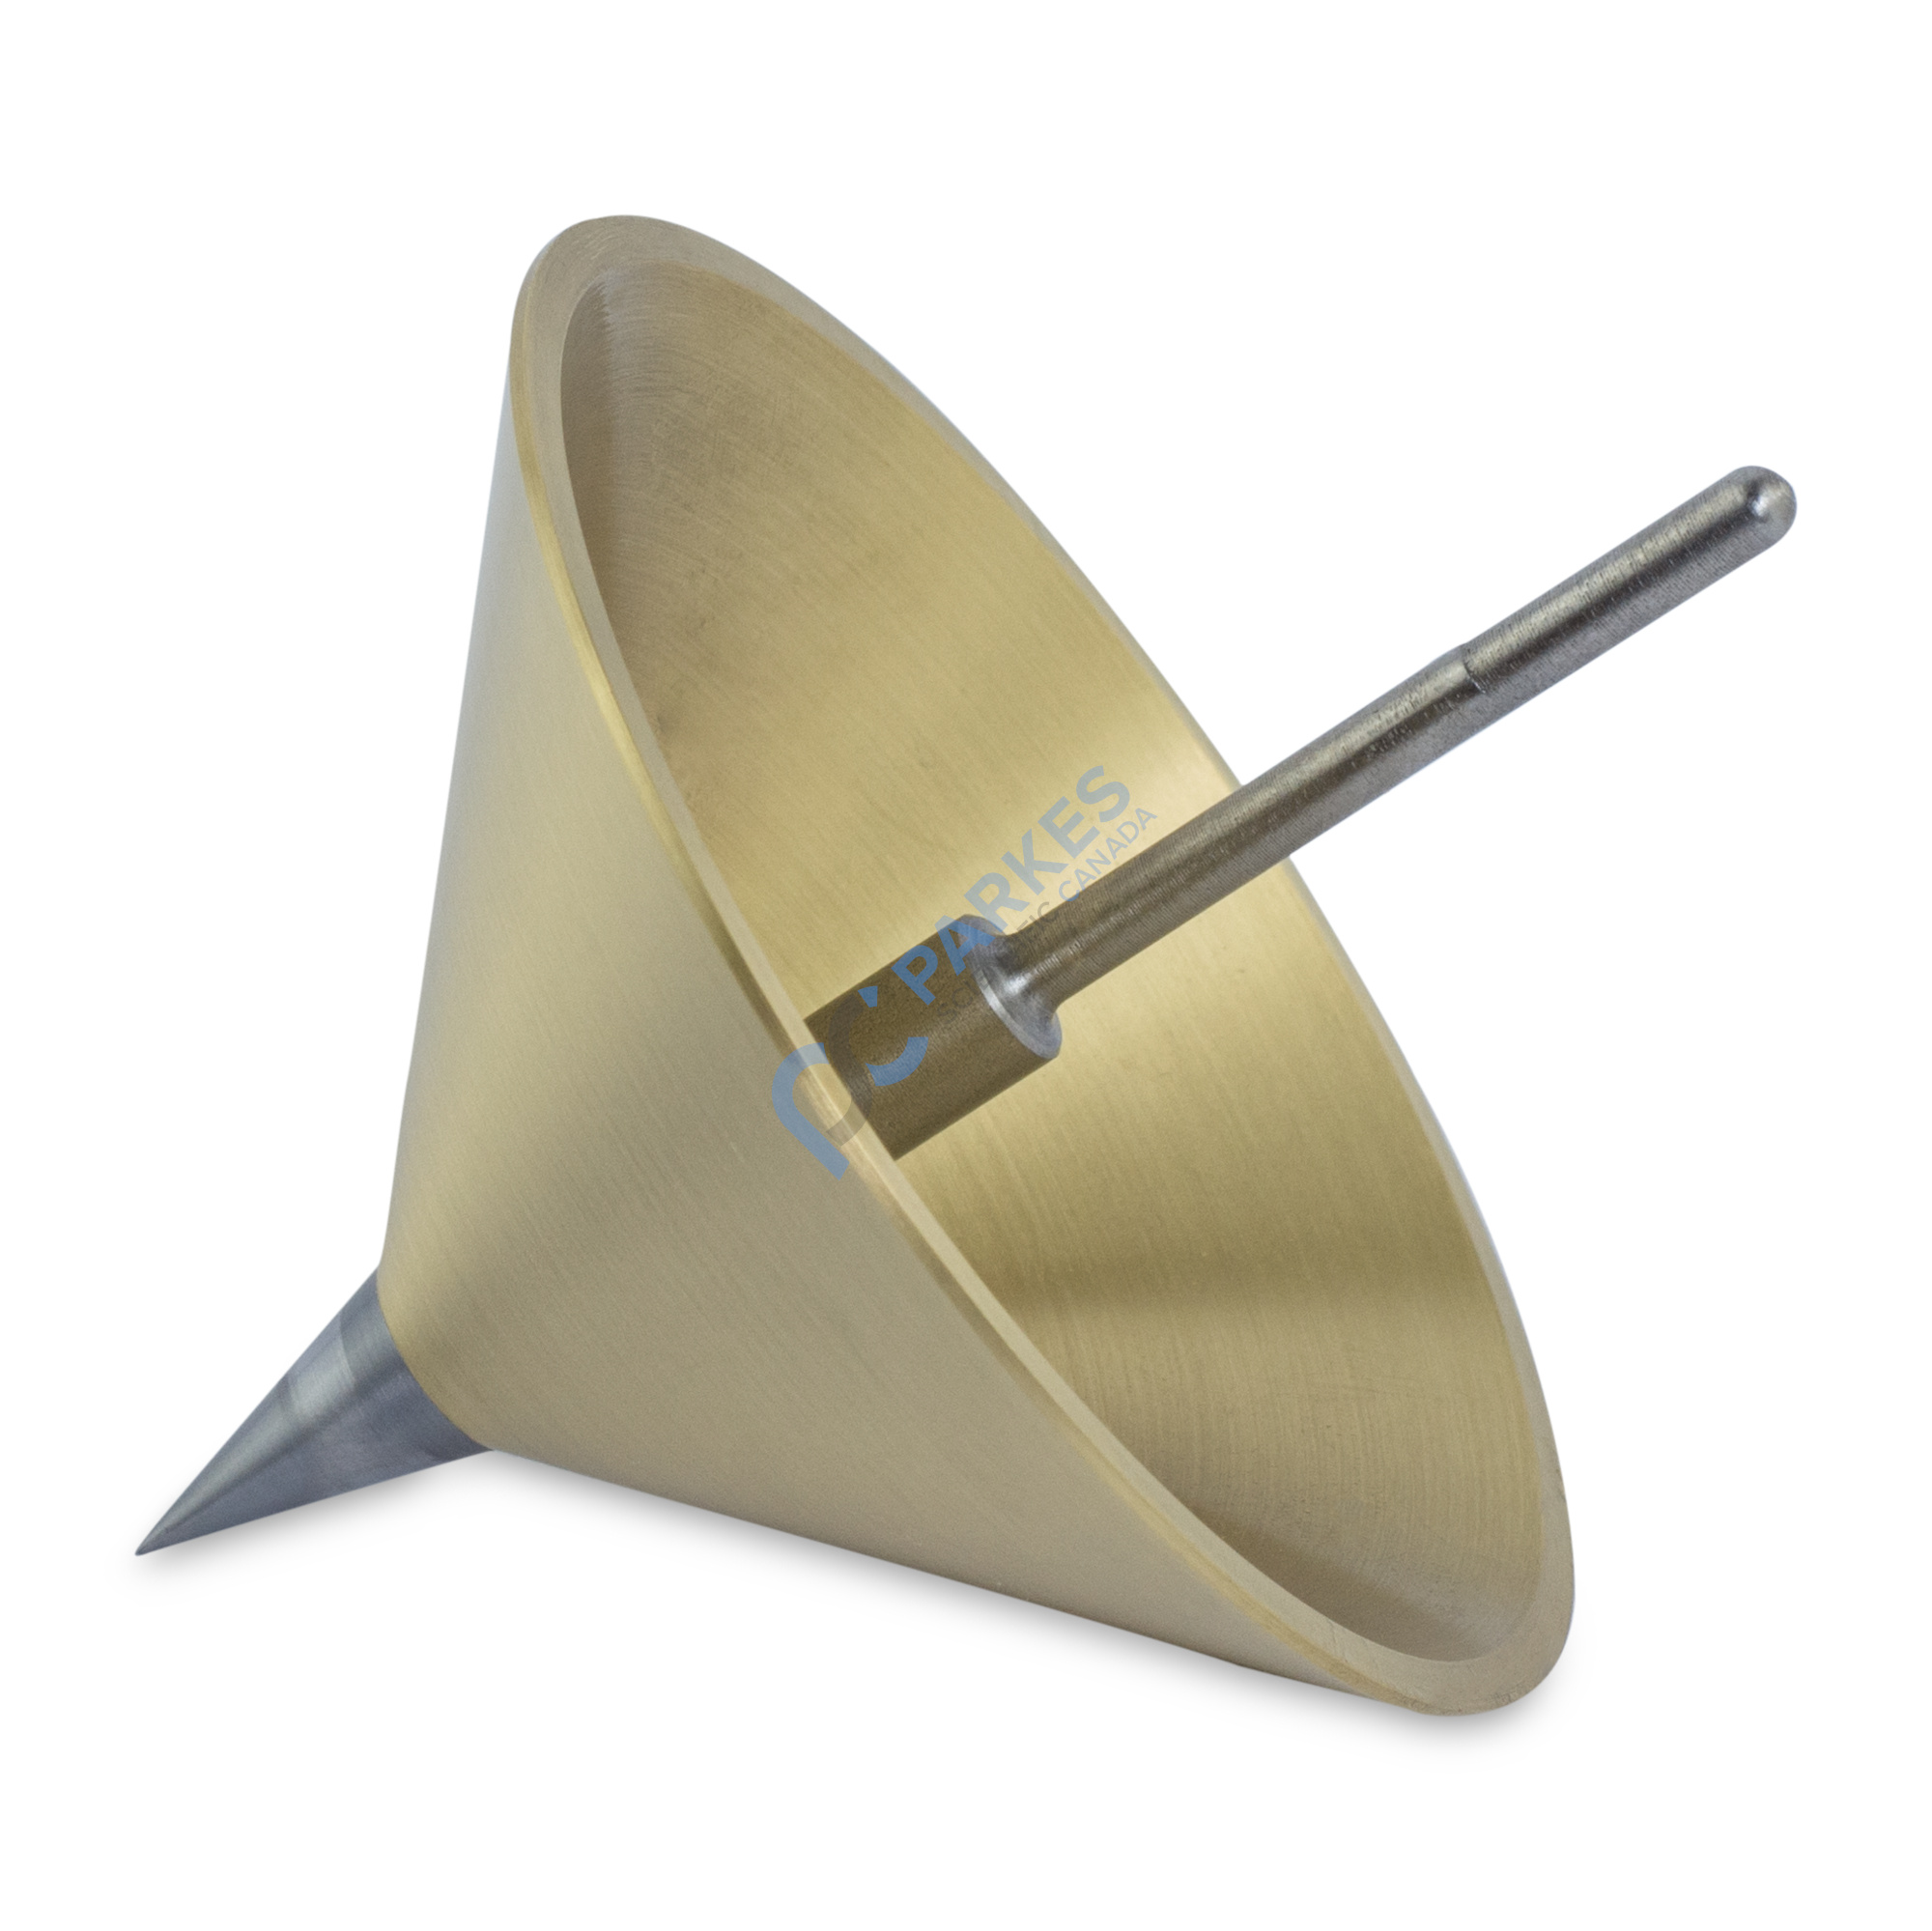 https://parkesscientific.com/media/image/4097/penetrometer-cone-brass-with-hardened-stainless-steel-tip-102-5g.jpg